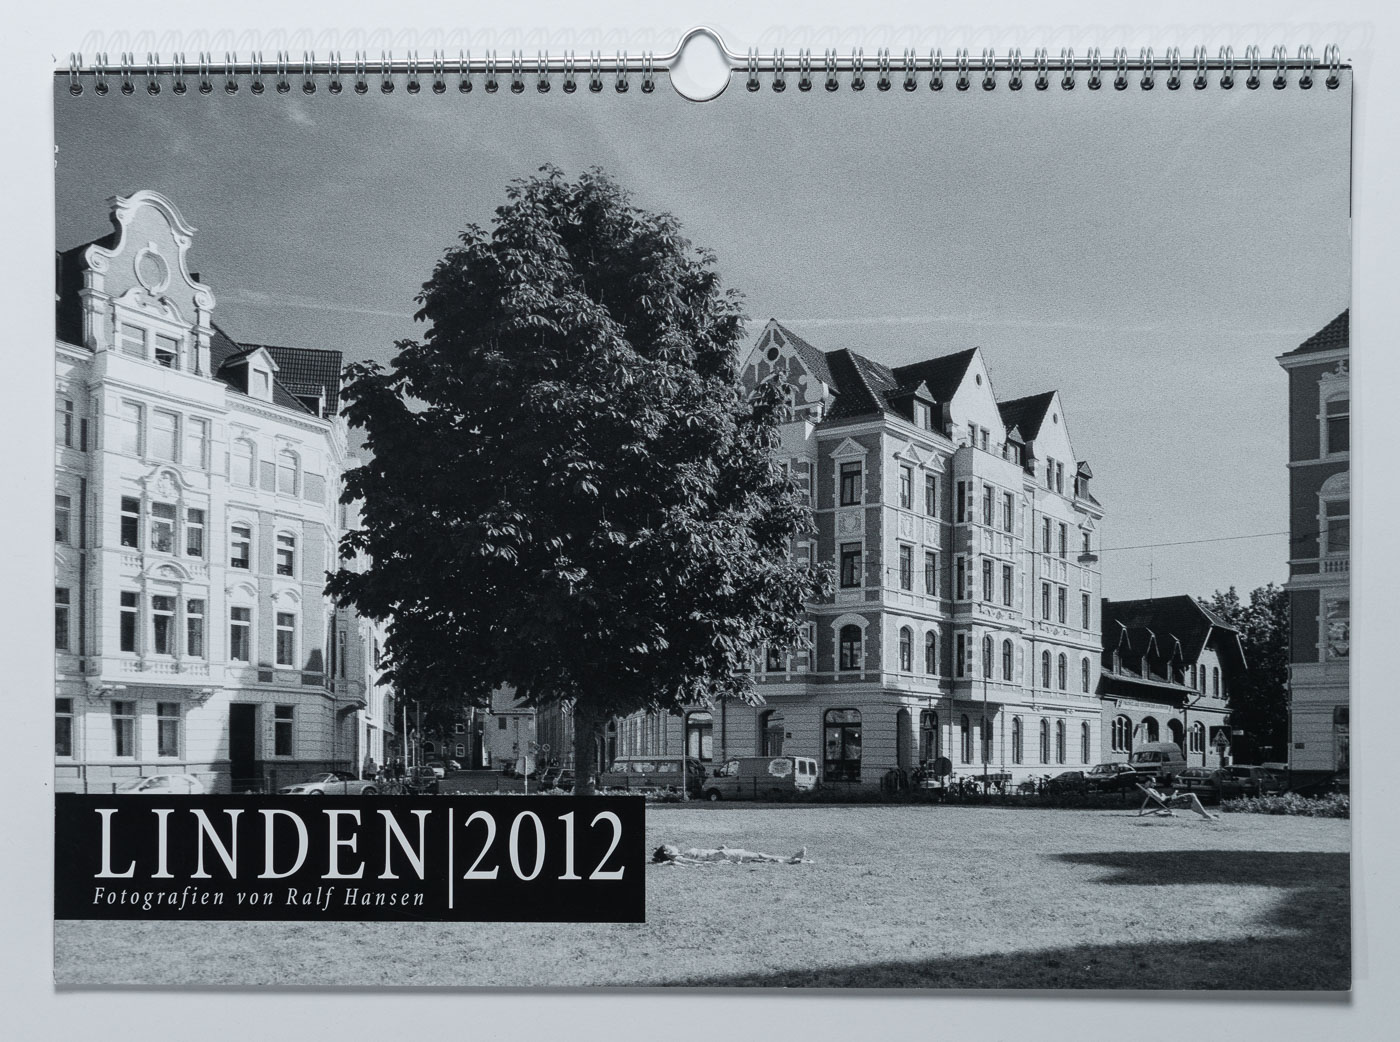 Lindenkalender LINDEN 2012